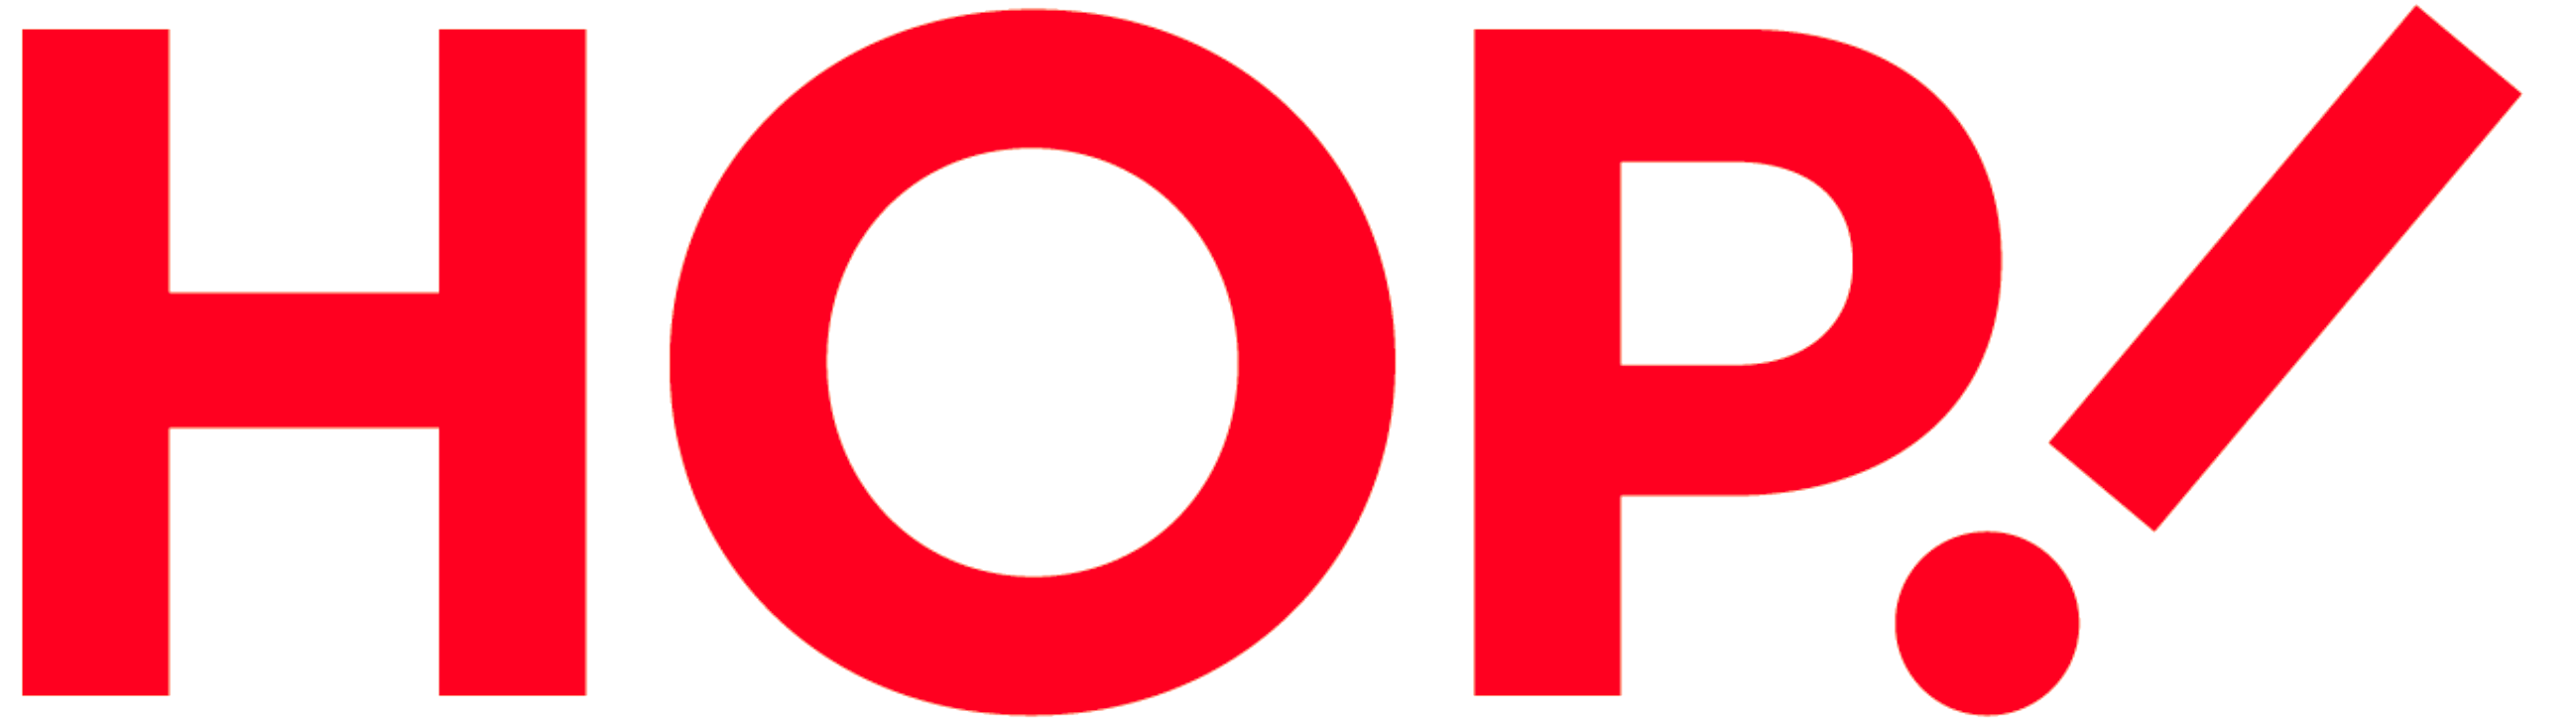 Hop logo